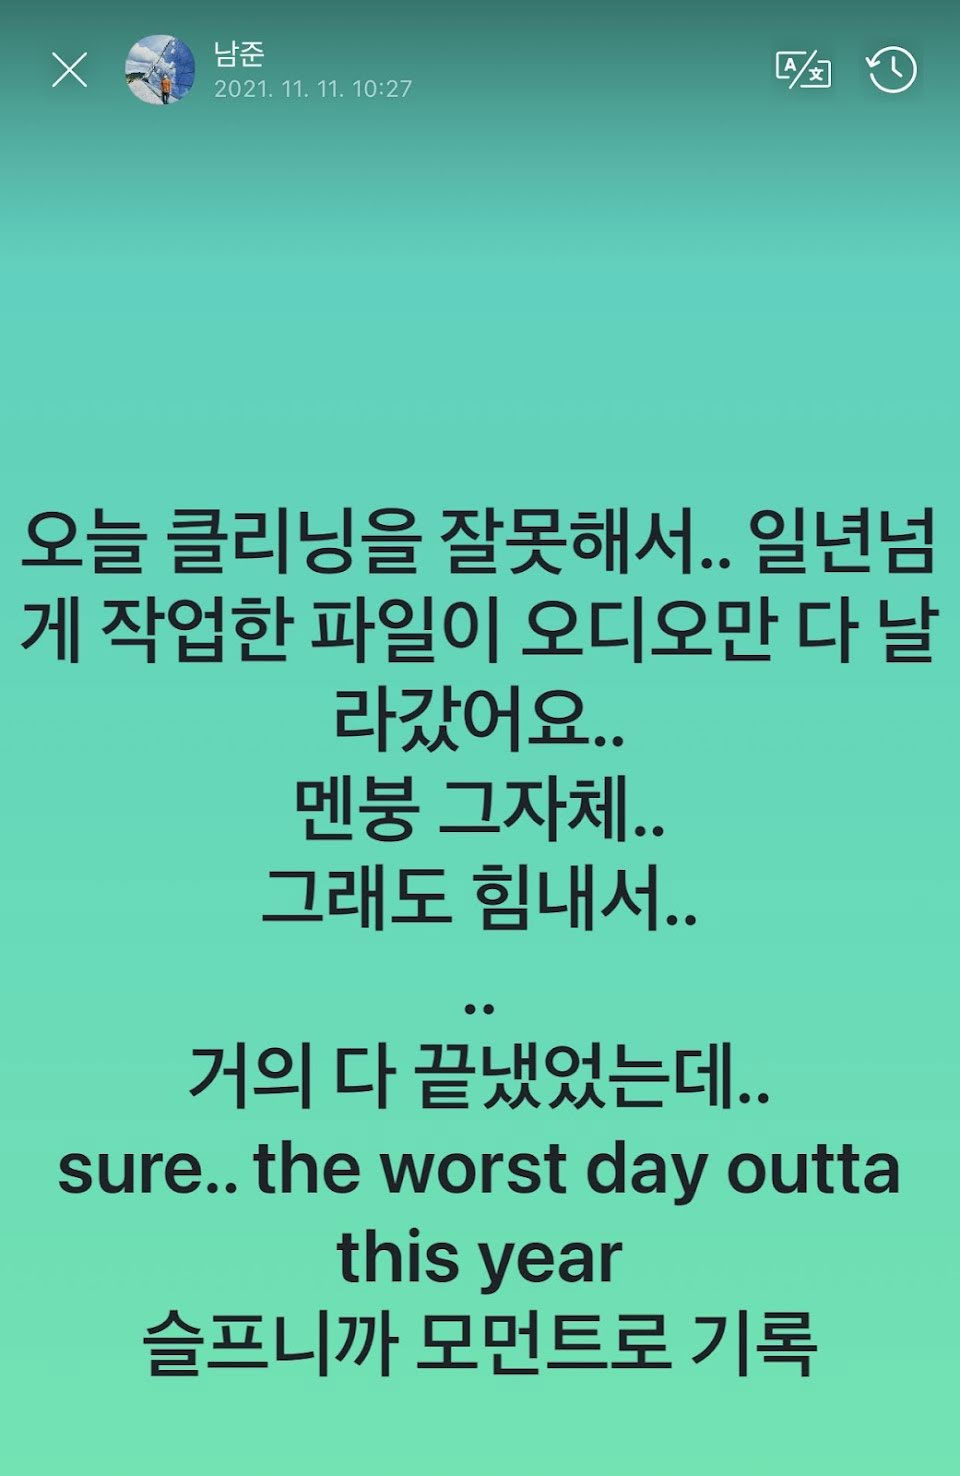 RM BTS membebani 'hari terburuk' tahun 2021: 'Saya sedih'